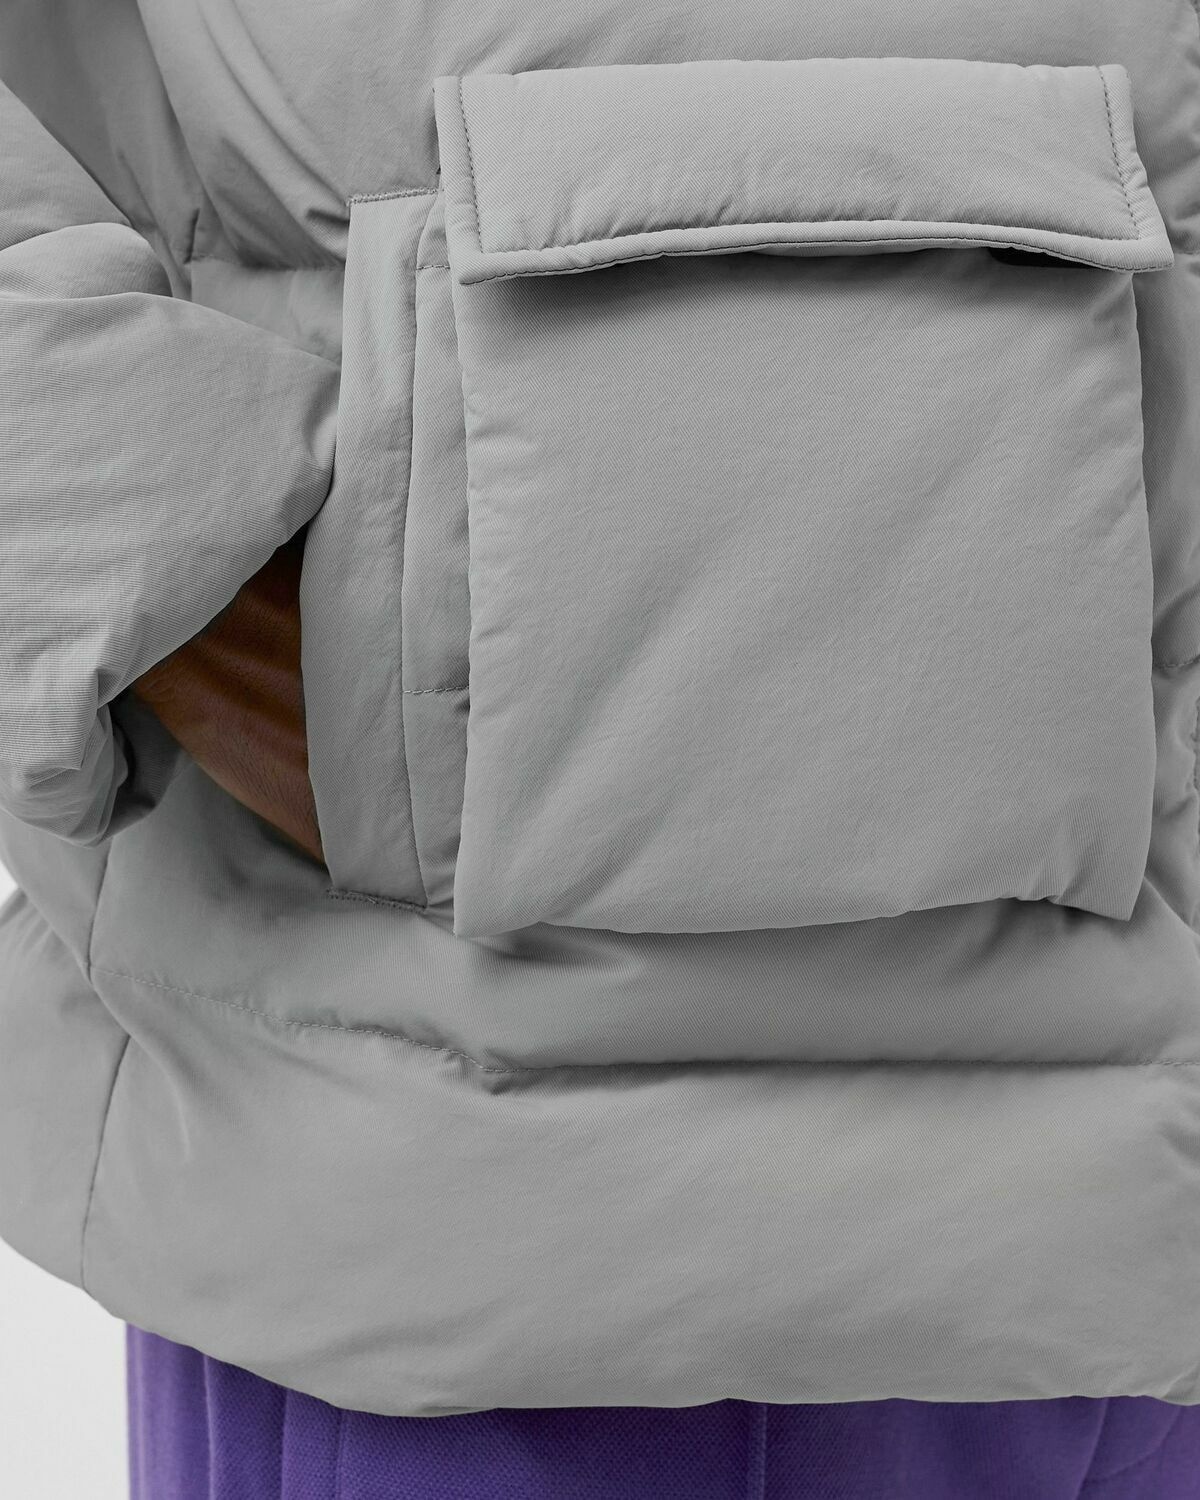 Bstn Brand Modular Puffer Jacket Grey - Mens - Down & Puffer Jackets